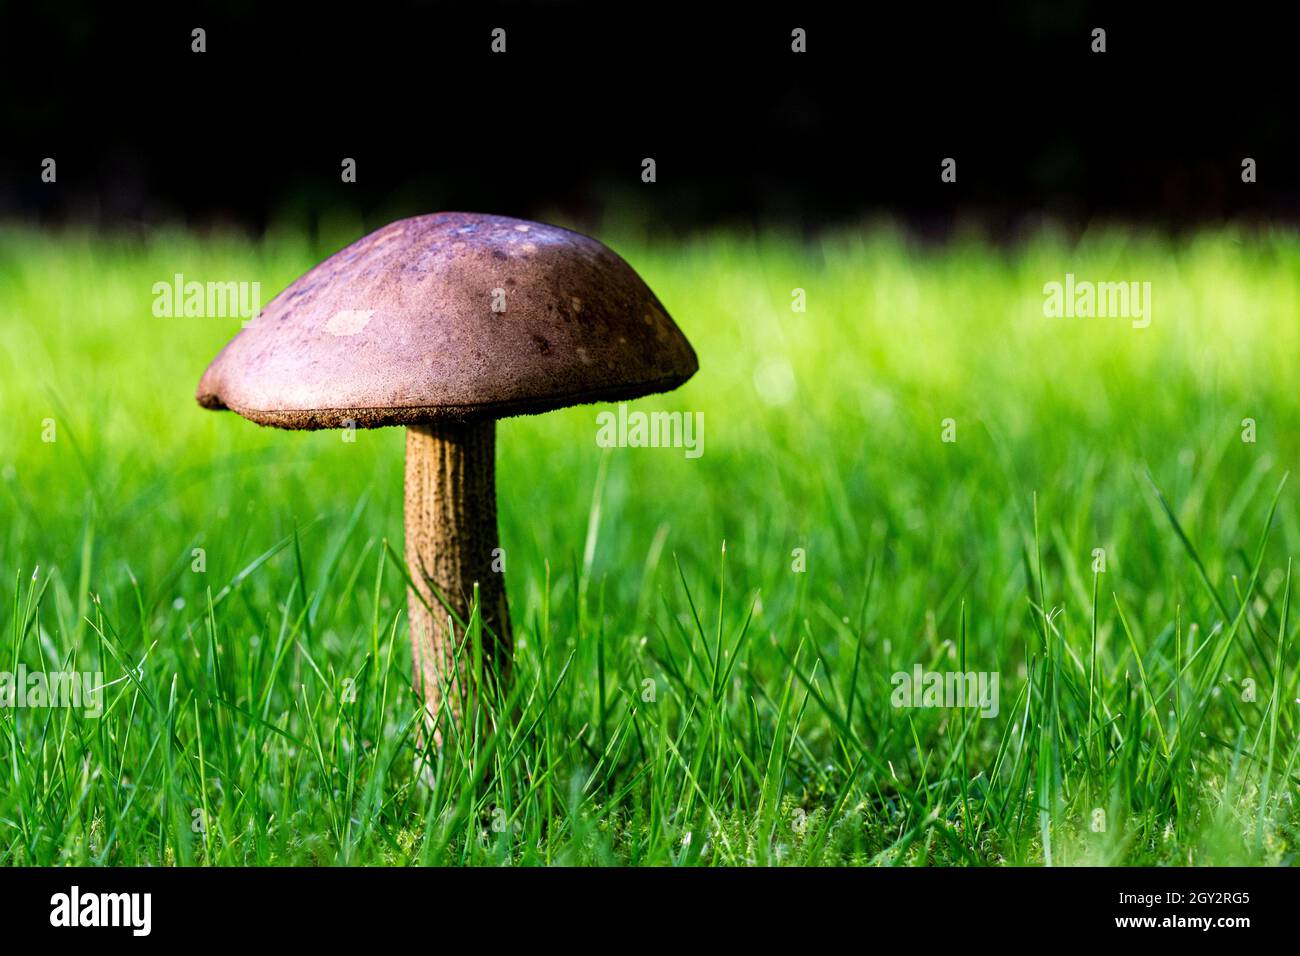 Bodenaufnahme von voll geformten Pilzen, Pilzen, Pilzen auf einem grünen Rasen mit einer dunklen Hecke im Hintergrund. Stockfoto